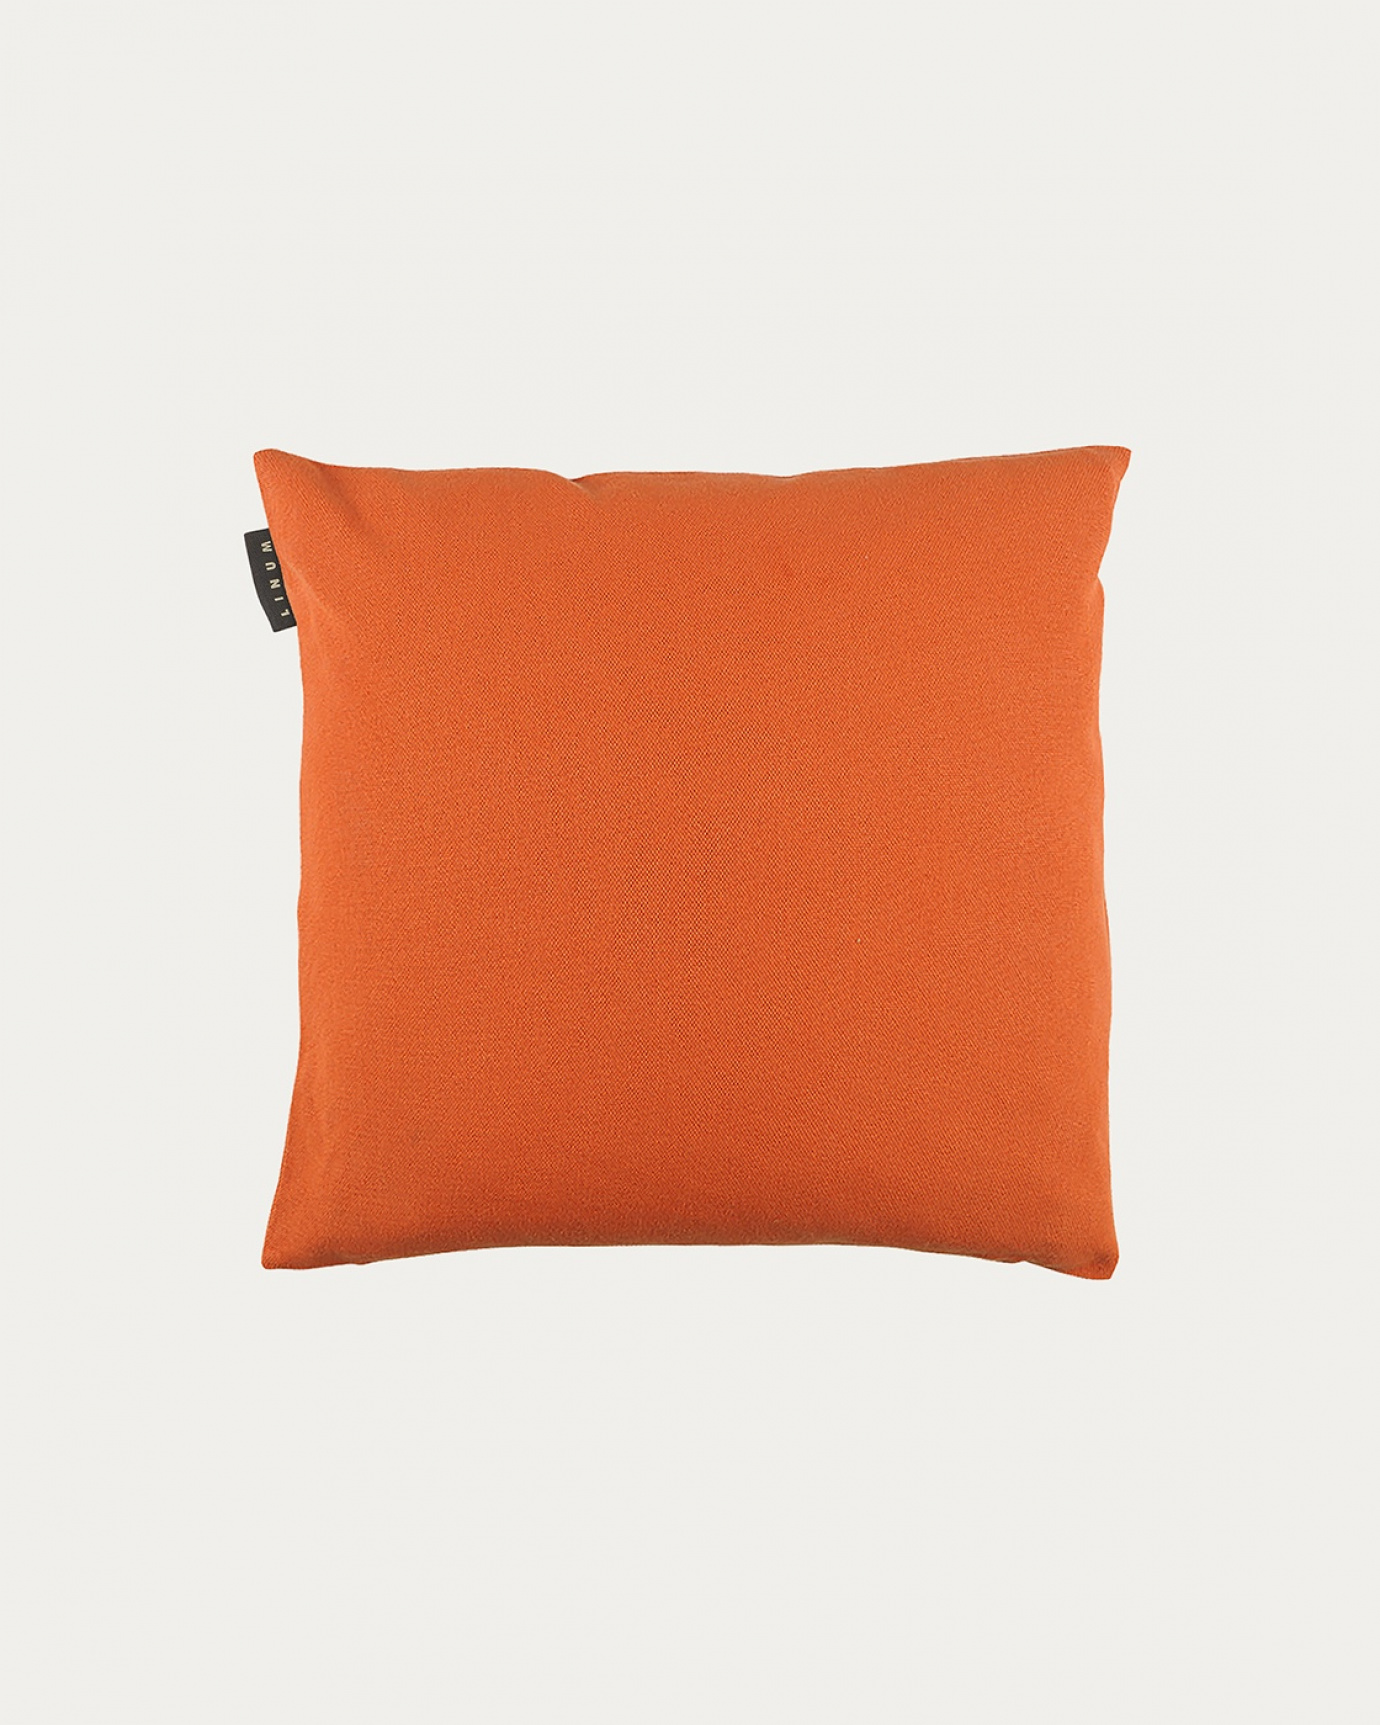 Produktbild orange PEPPER Kissenhülle aus weicher Baumwolle von LINUM DESIGN. Einfach zu waschen und langlebig für Generationen. Größe 40x40 cm.